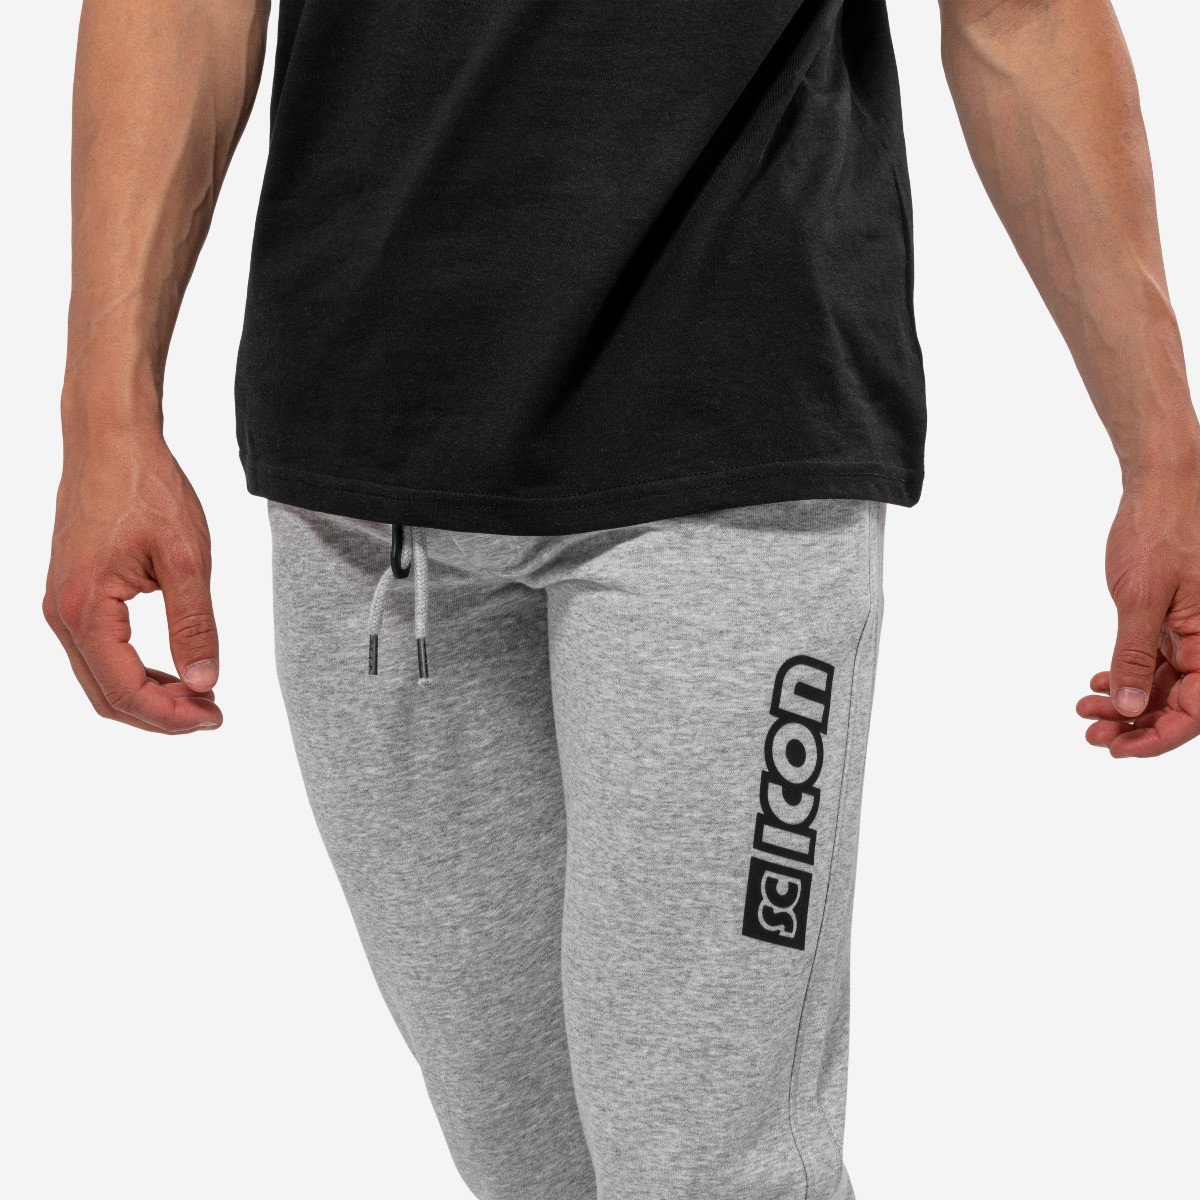 Scicon Sports | Scicon Athletic Fleece Pants - Grey - WP51904